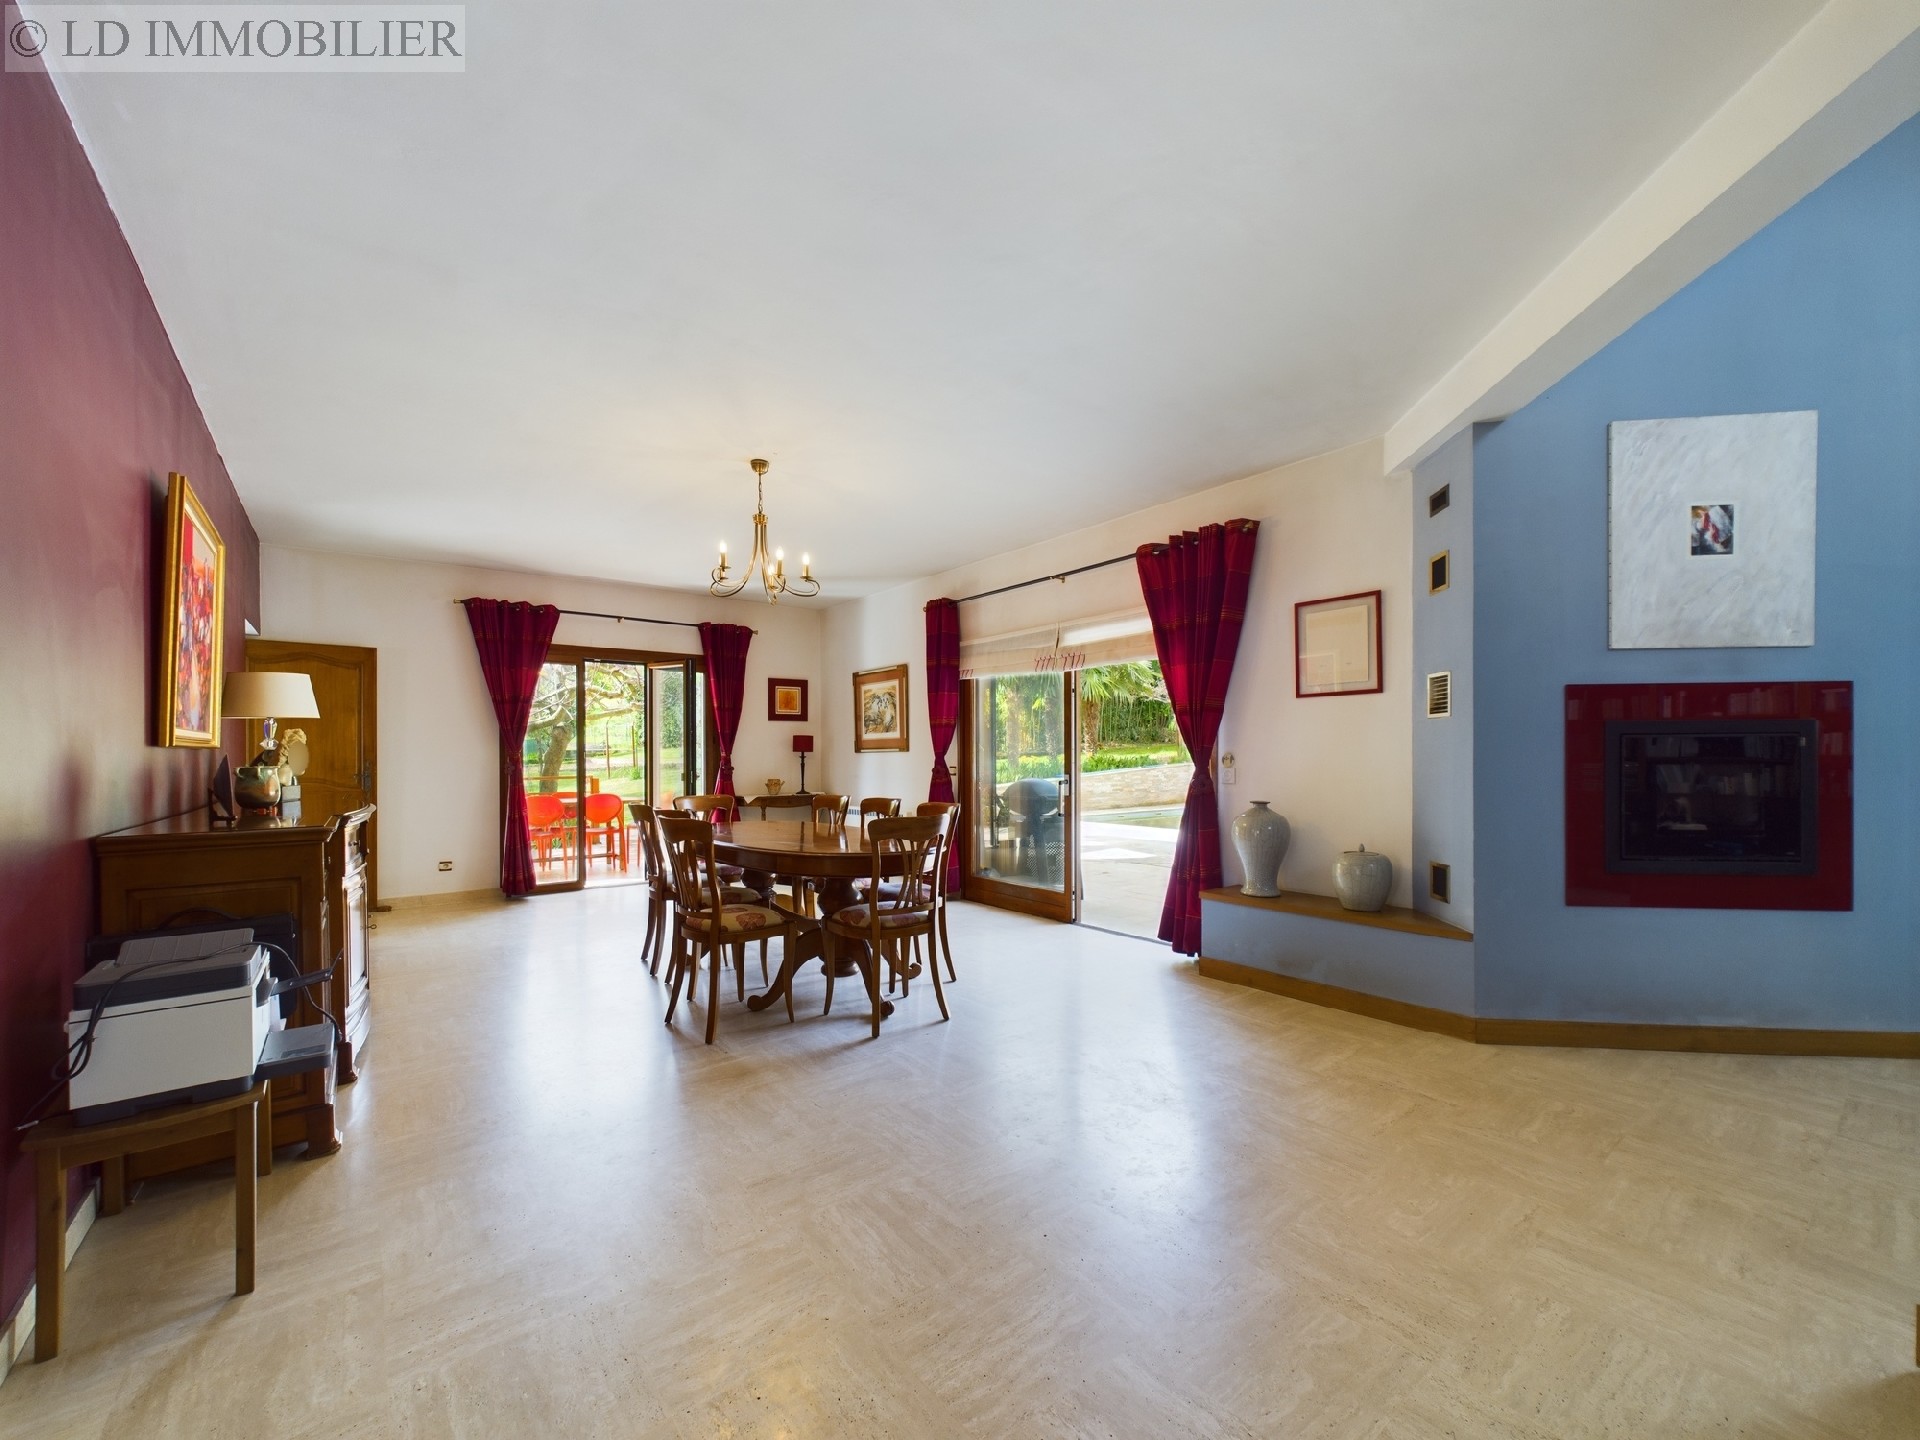 Vente maison  villa - BARBERAZ 230 m², 8 pièces